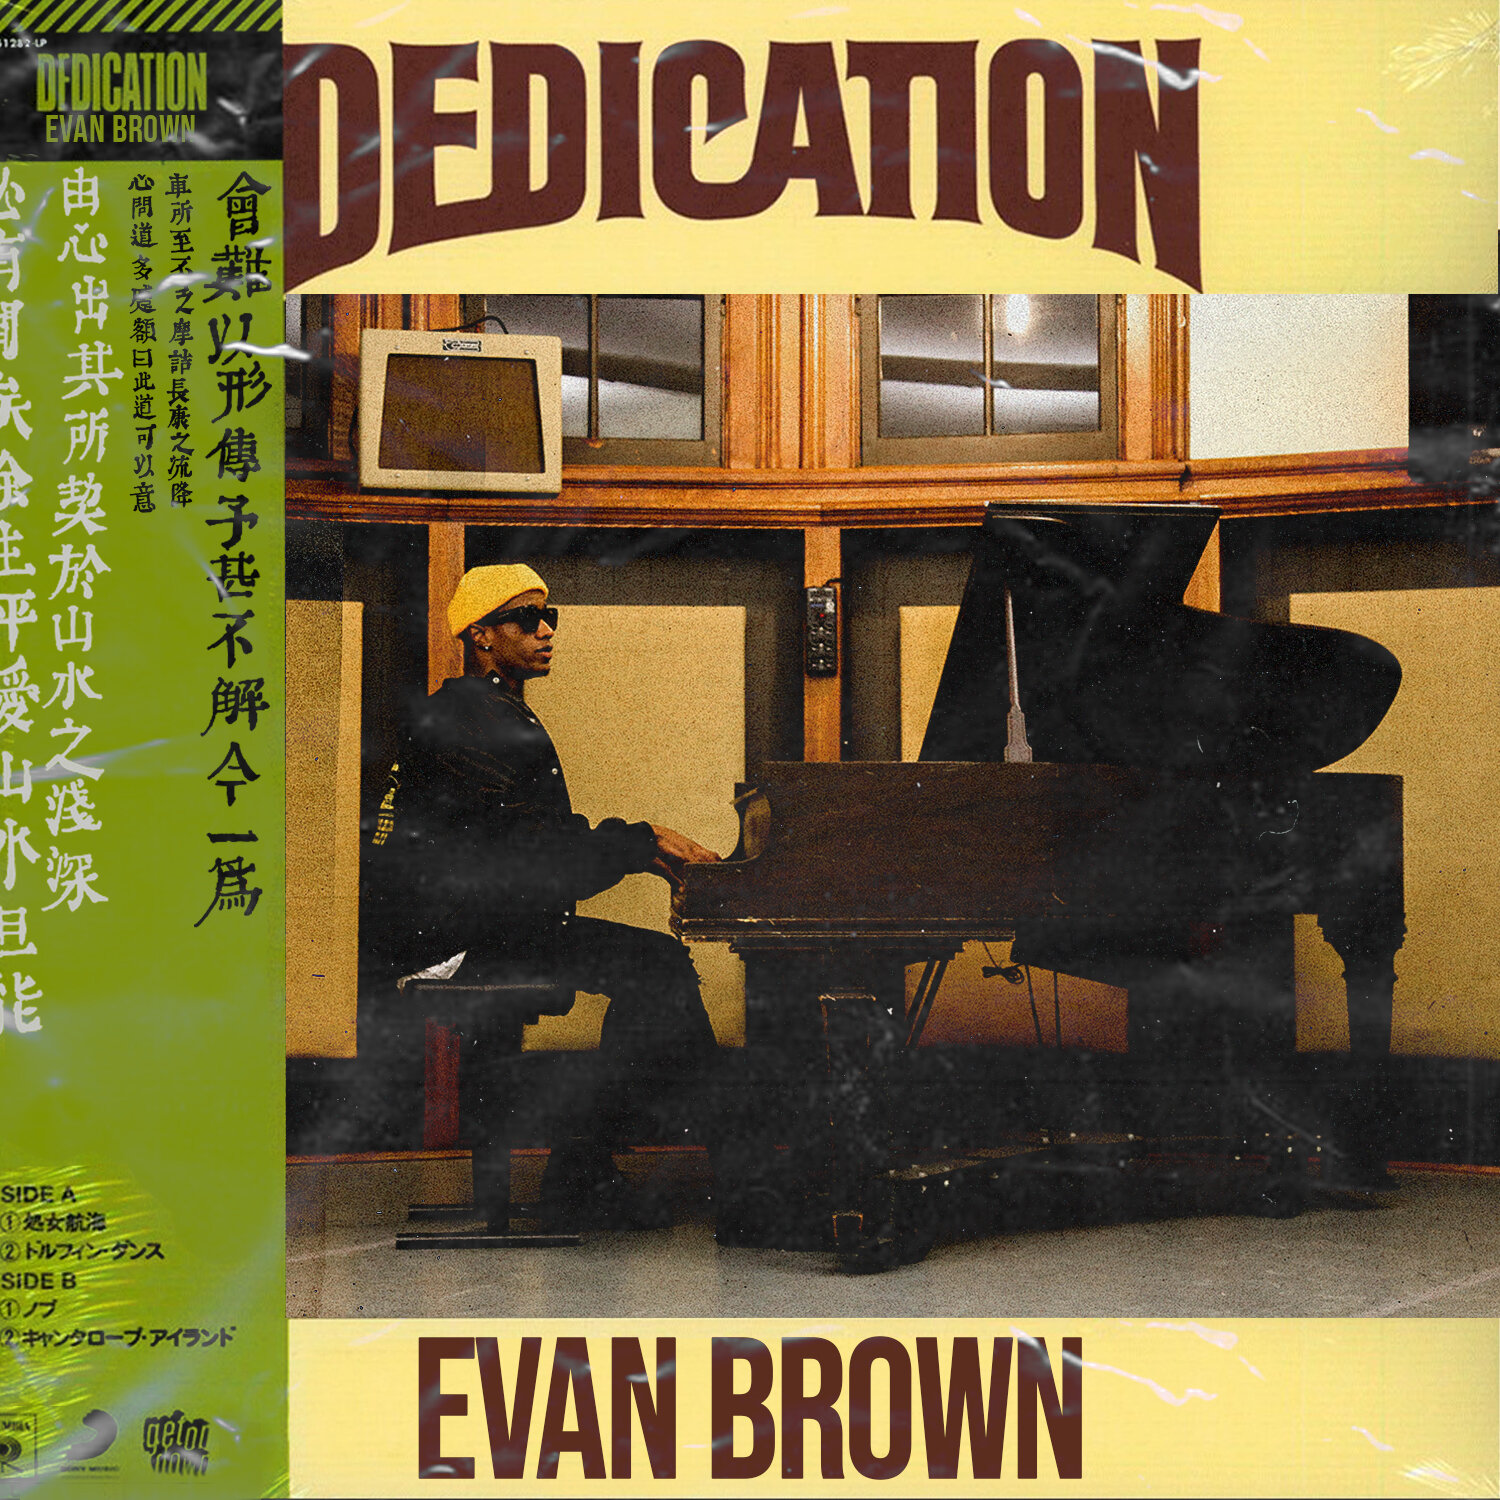 Evan Brown - Dedication.jpg